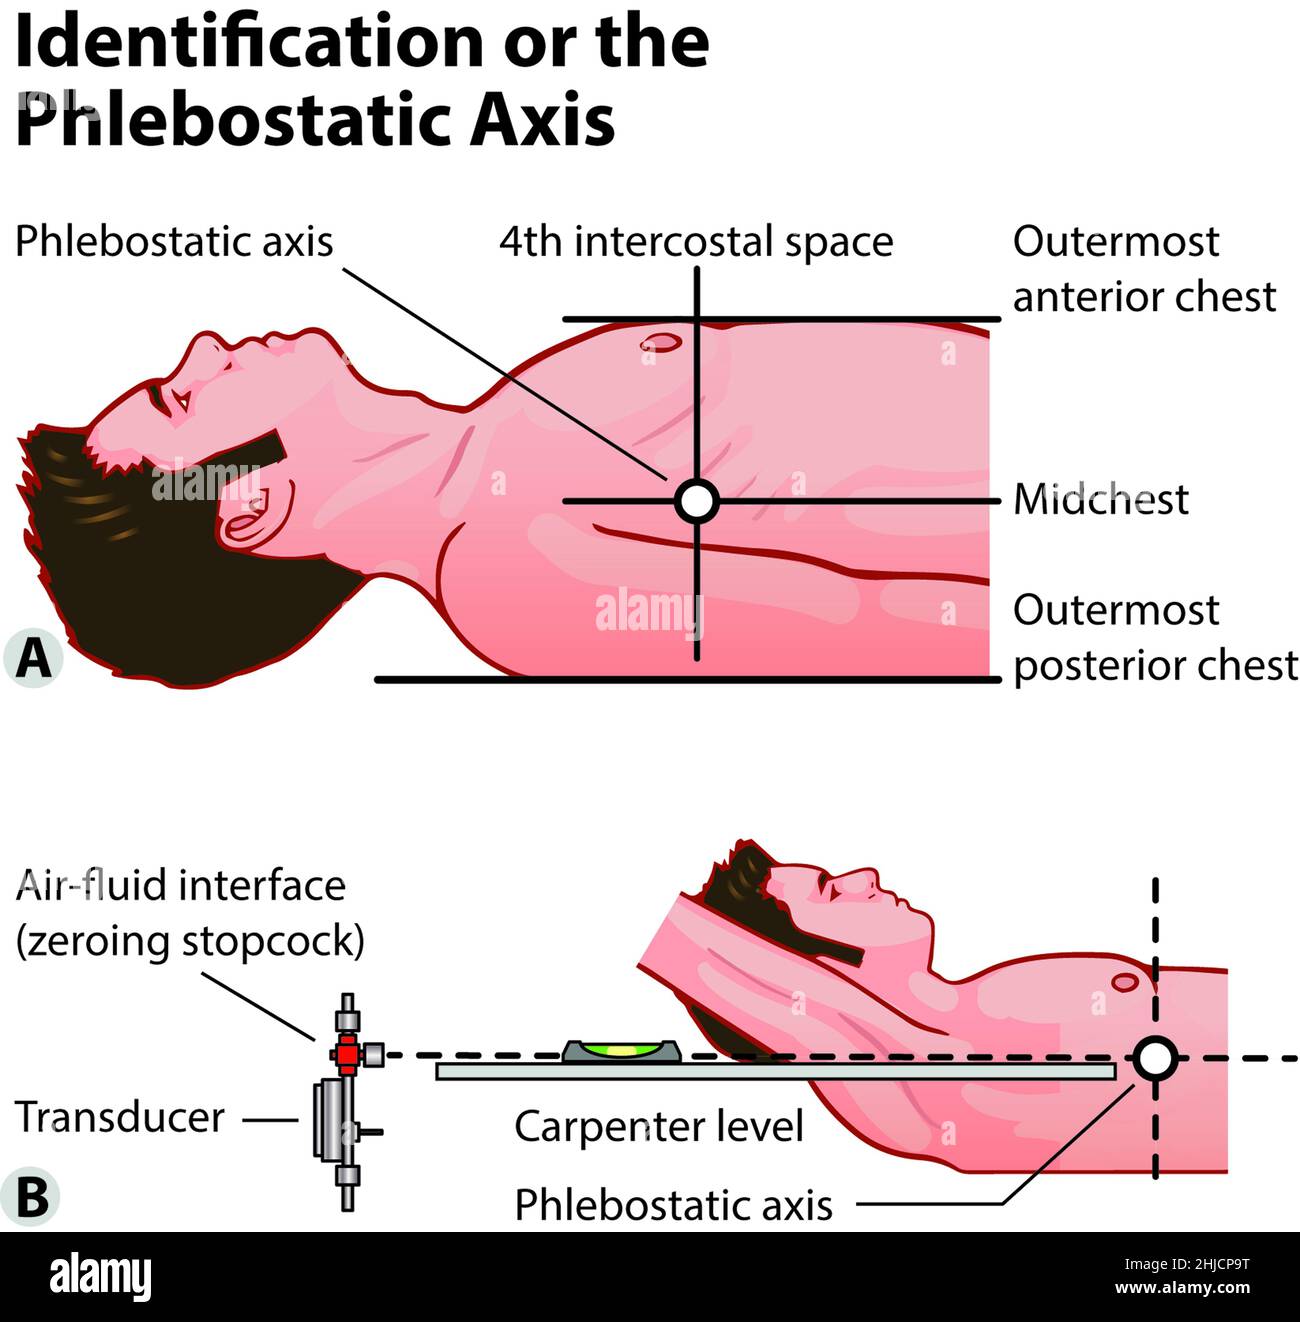 3 von 3 Abbildung eines medizinischen Diagramms, das die intraaortische Ballonpumpentherapie zeigt. Wie man die Pleblostatikachse identifiziert. Pädagogische Biologie Themen Stockfoto